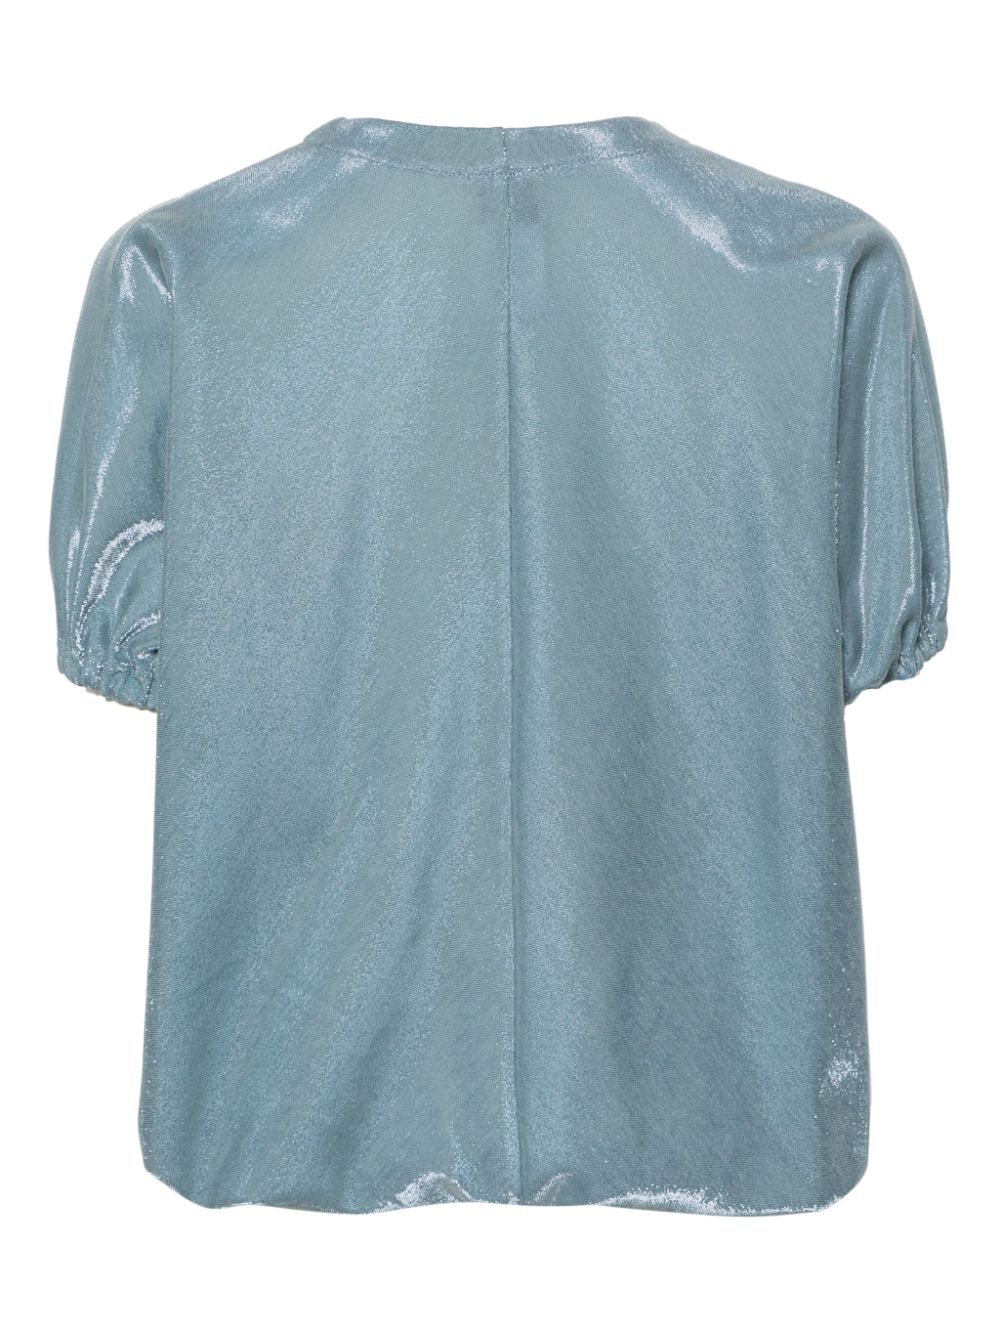 Camicia donna blu/grigio